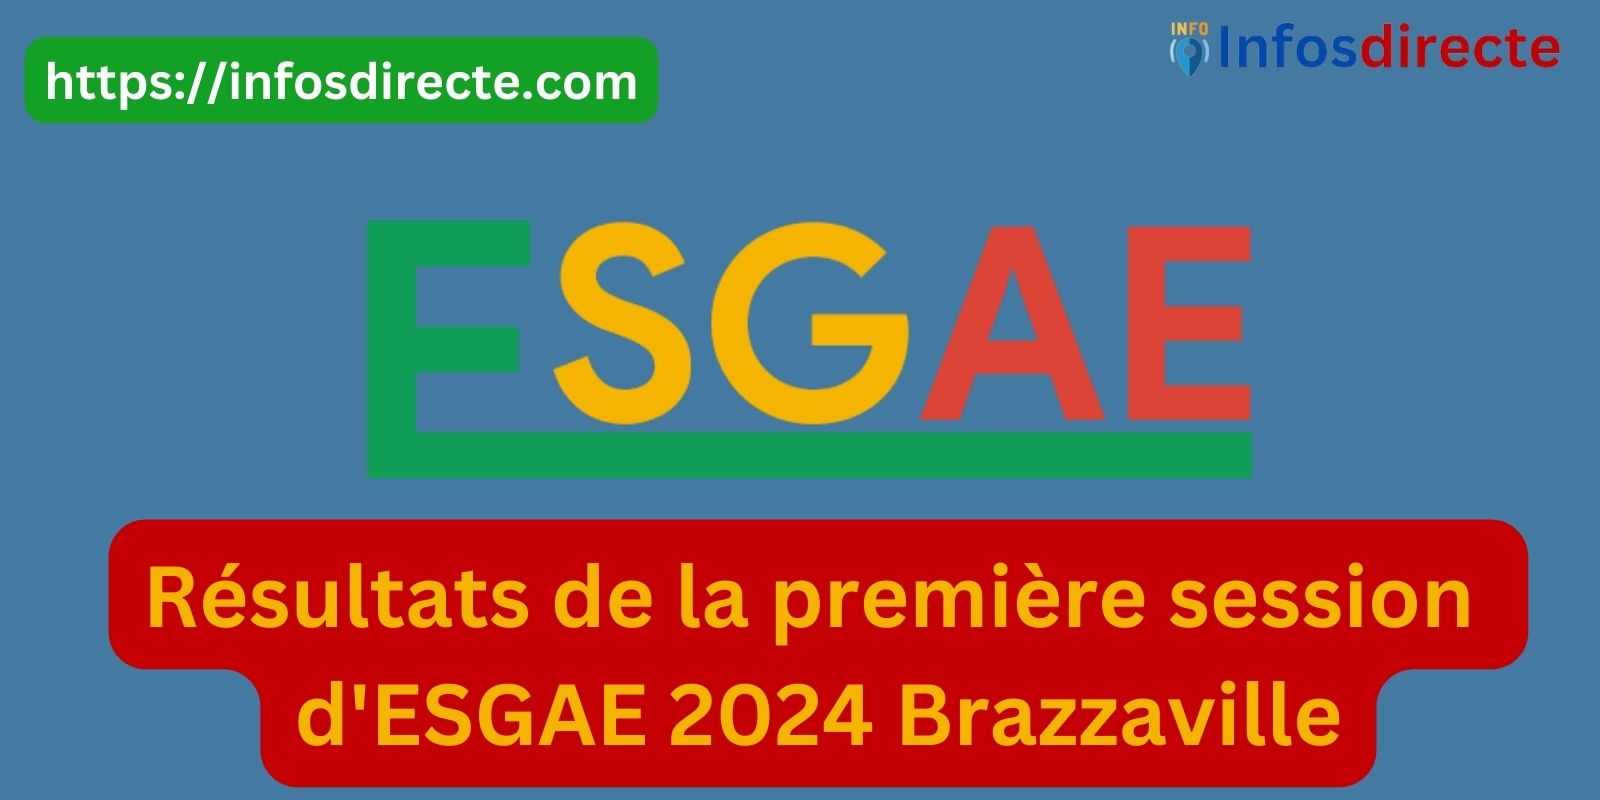 Les Résultats de la première session d'ESGAE 2024 Brazzaville disponibles le 03 juin